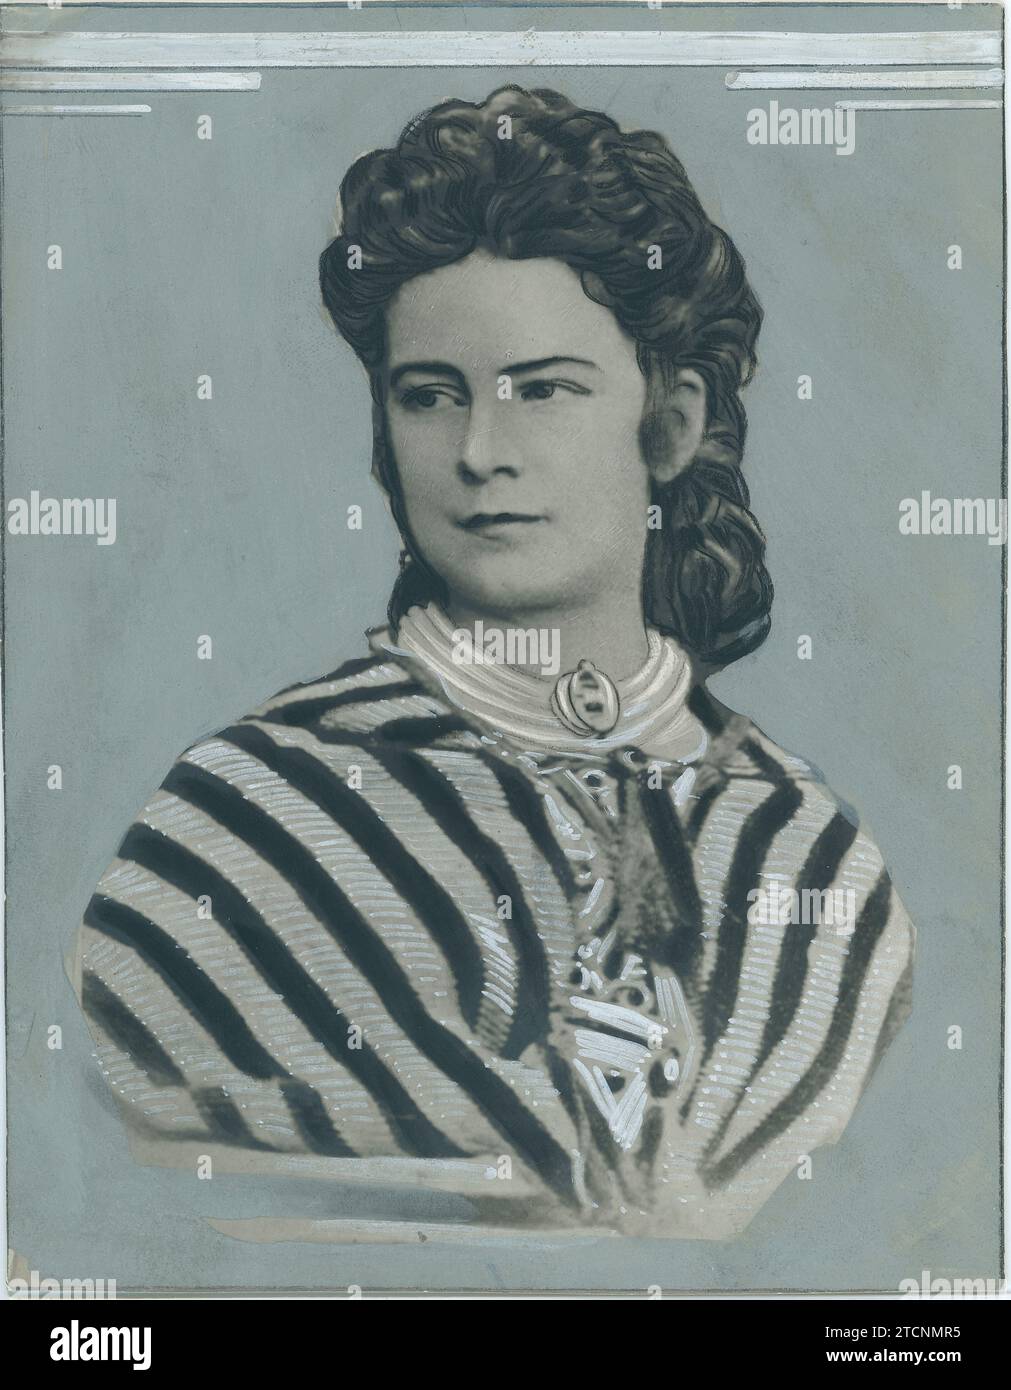 01/01/1870. La emperatriz Isabel de Austria 'Sissi'. Crédito: Álbum / Archivo ABC Foto de stock